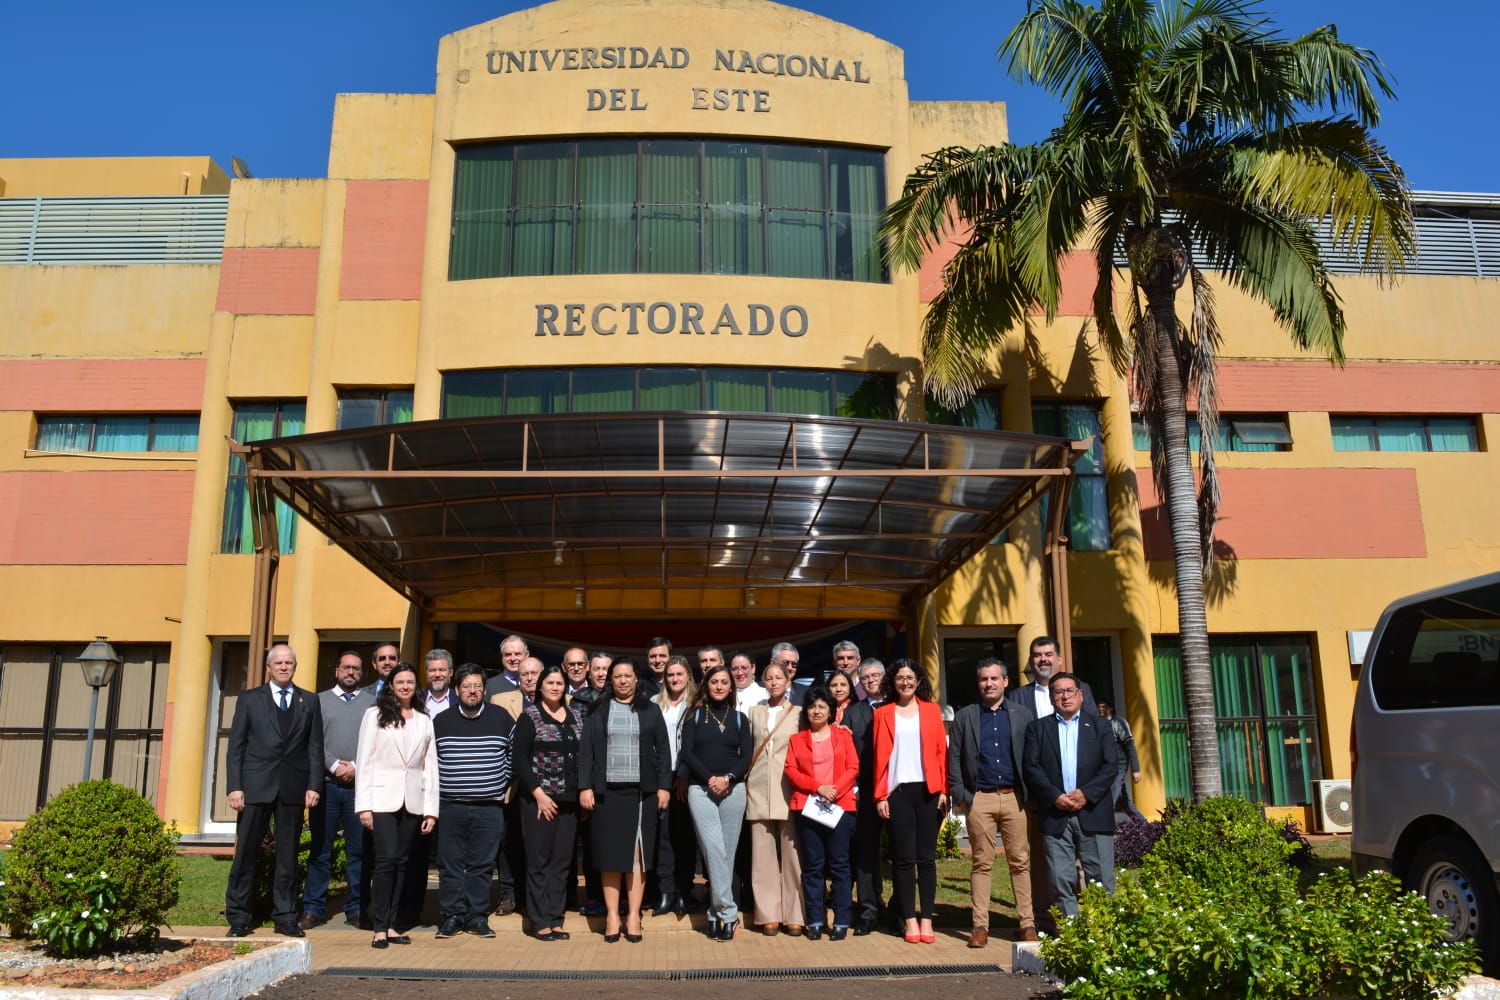 Delegados reunidos para a reunião na Ciudad del Este, Paraguai